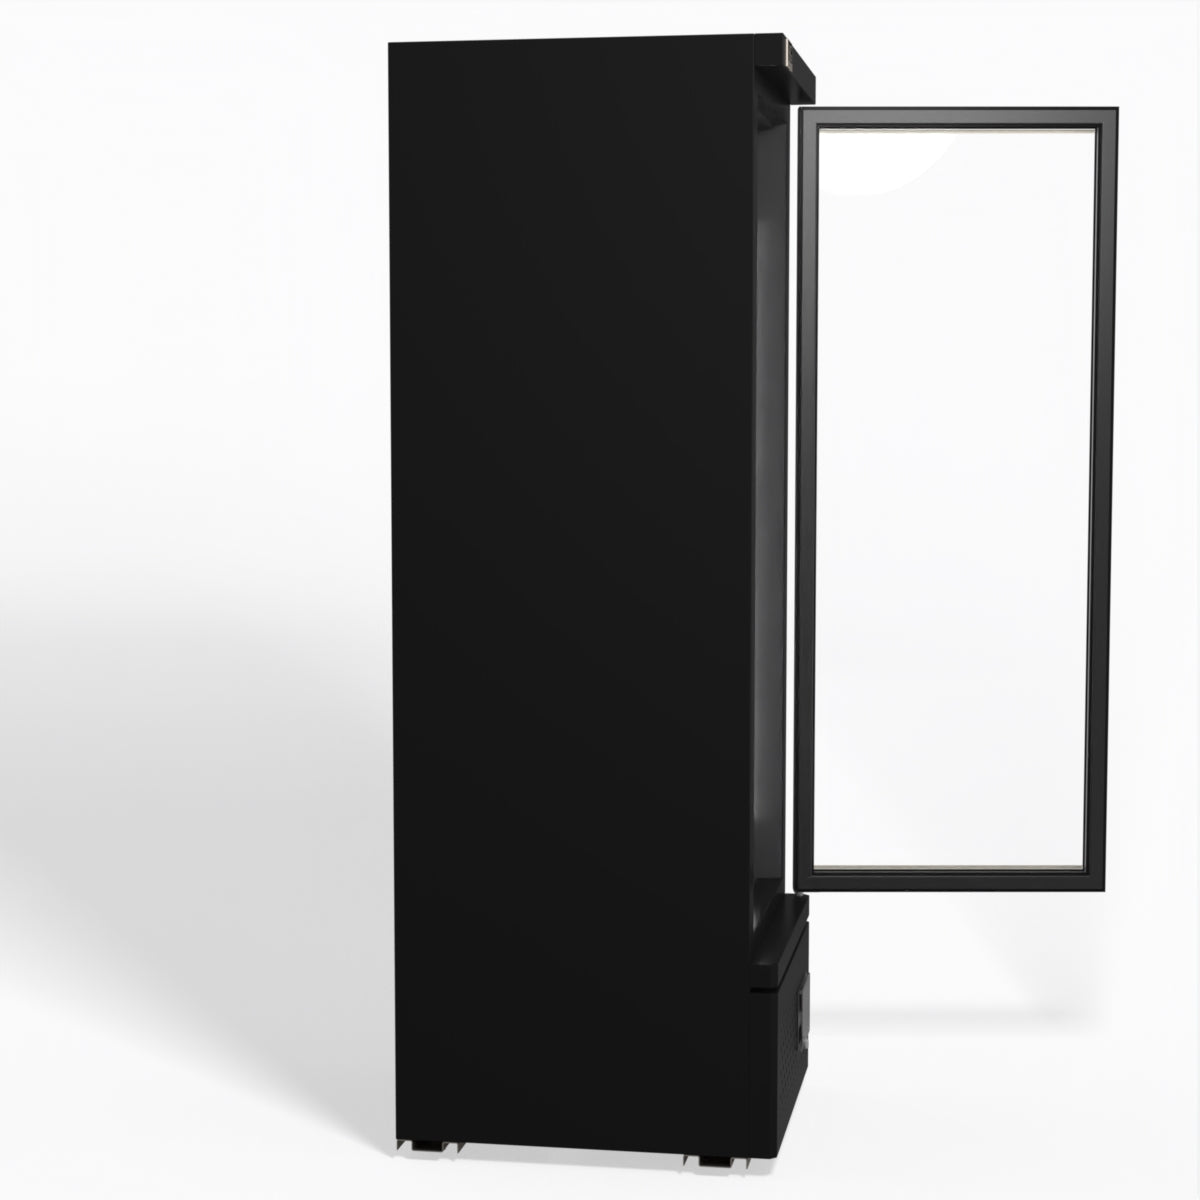 Supermarket Single Glass Door Upright Display Freezer - 450 Litre